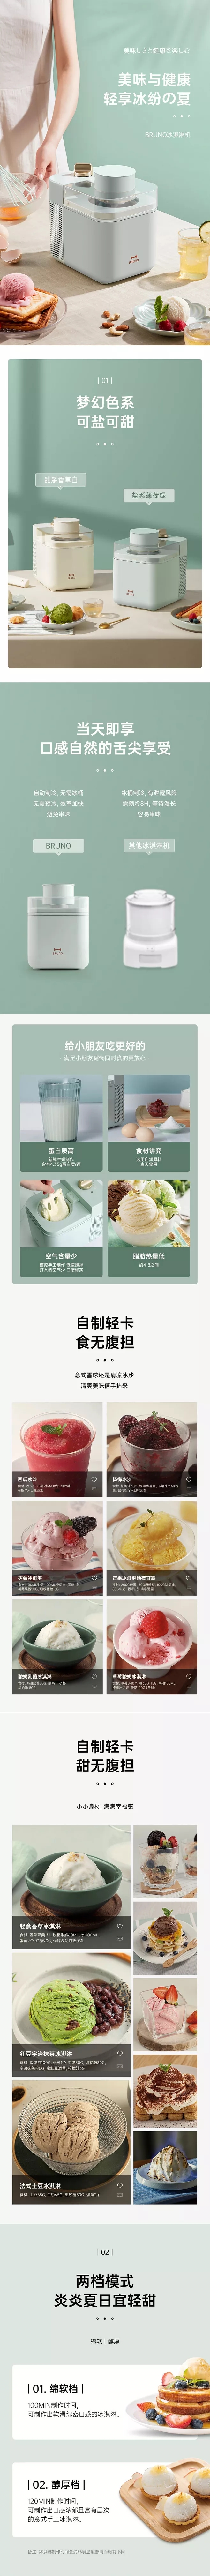 淘宝美工子柒美味健康冰淇淋机作品